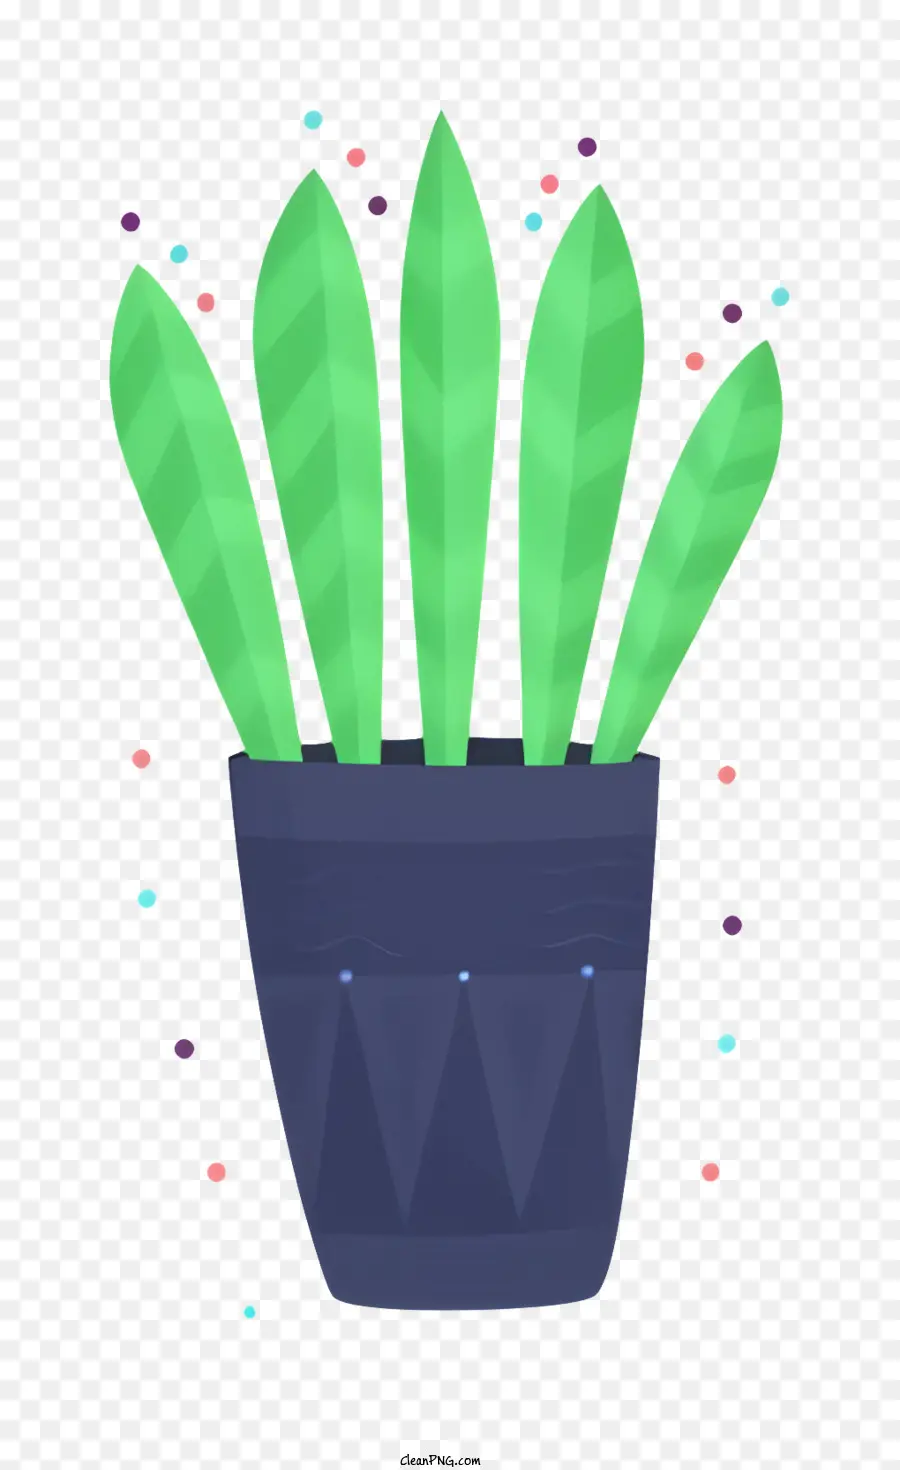 freccia - Riepilogo di 7 parole: pianta in vaso con fiori rosa e pentola blu